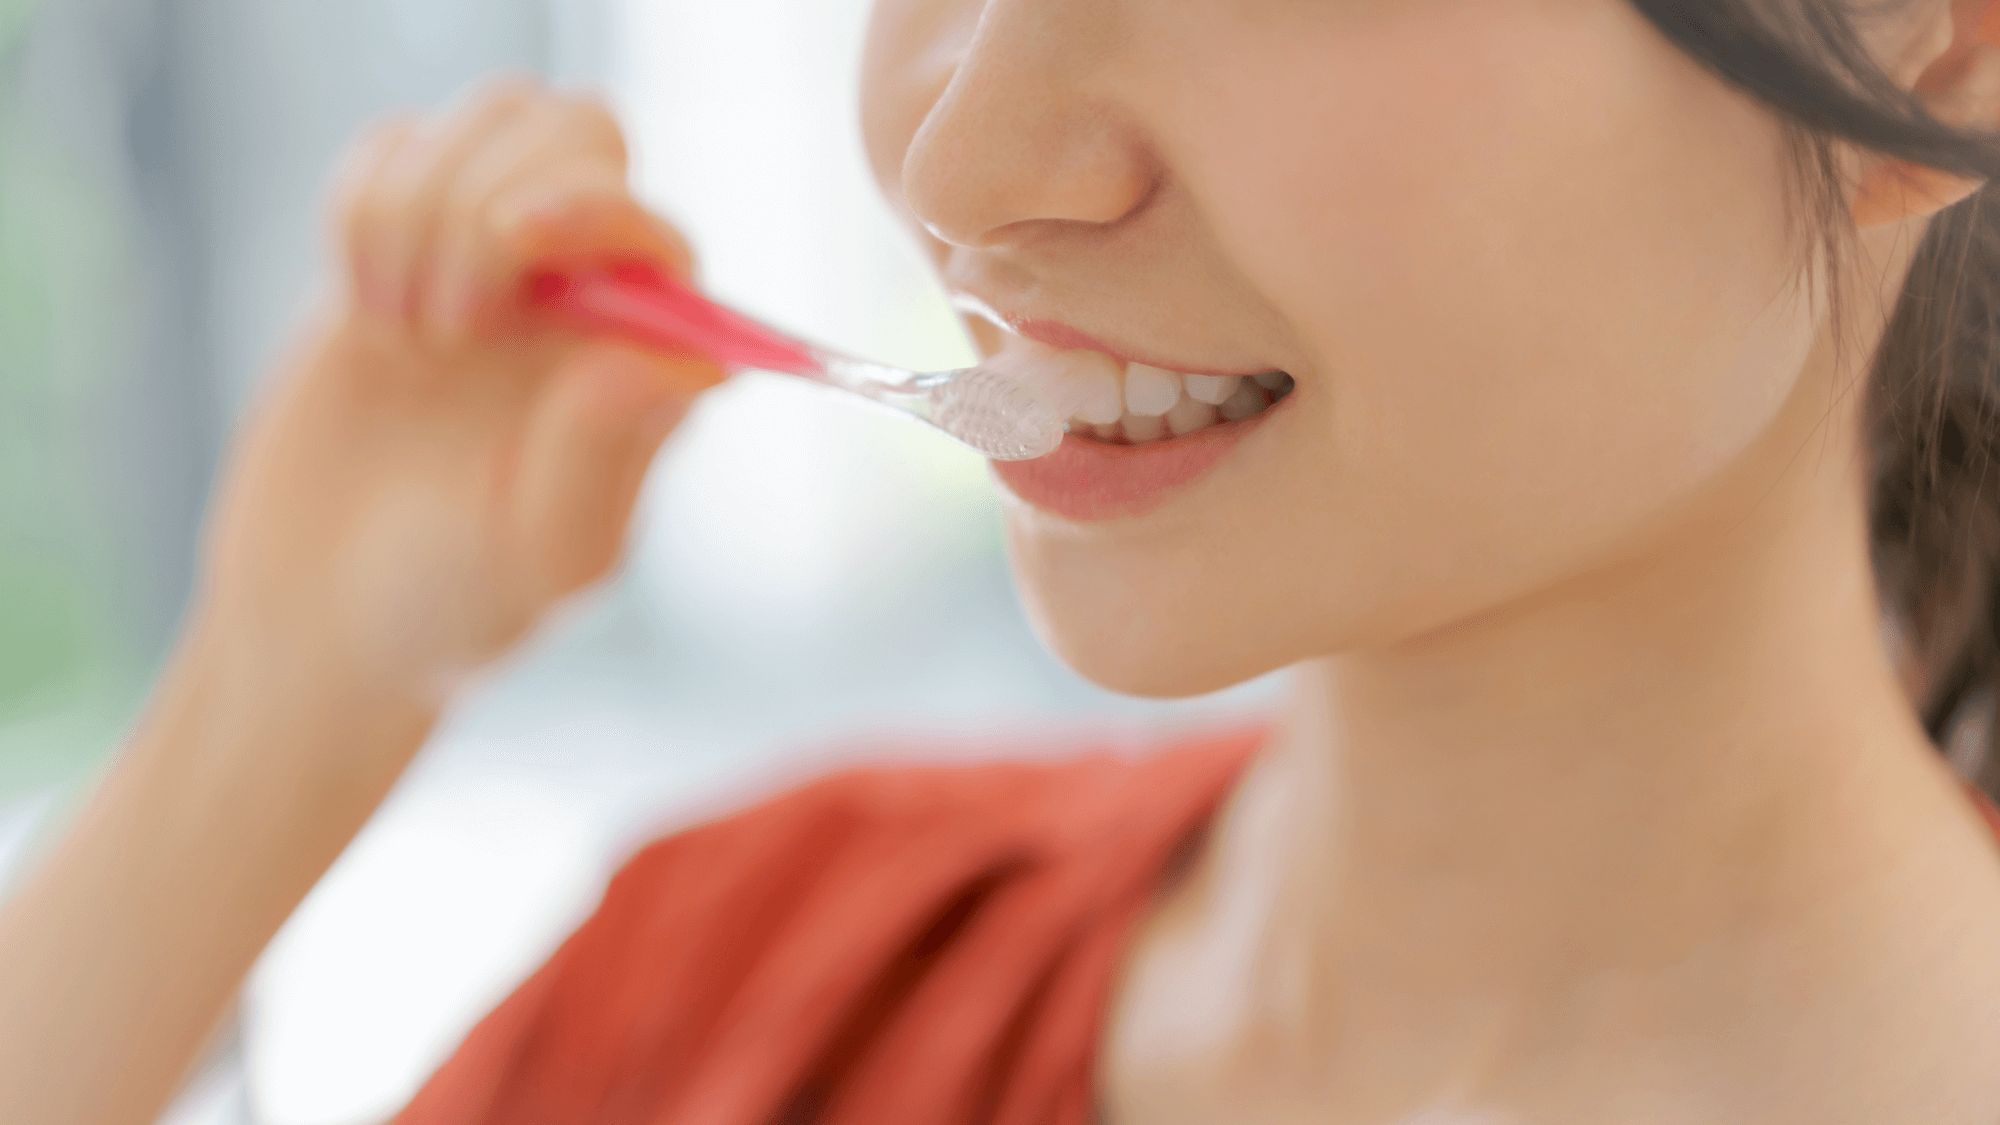 食べたら歯を磨く。歯を磨く人物の画像